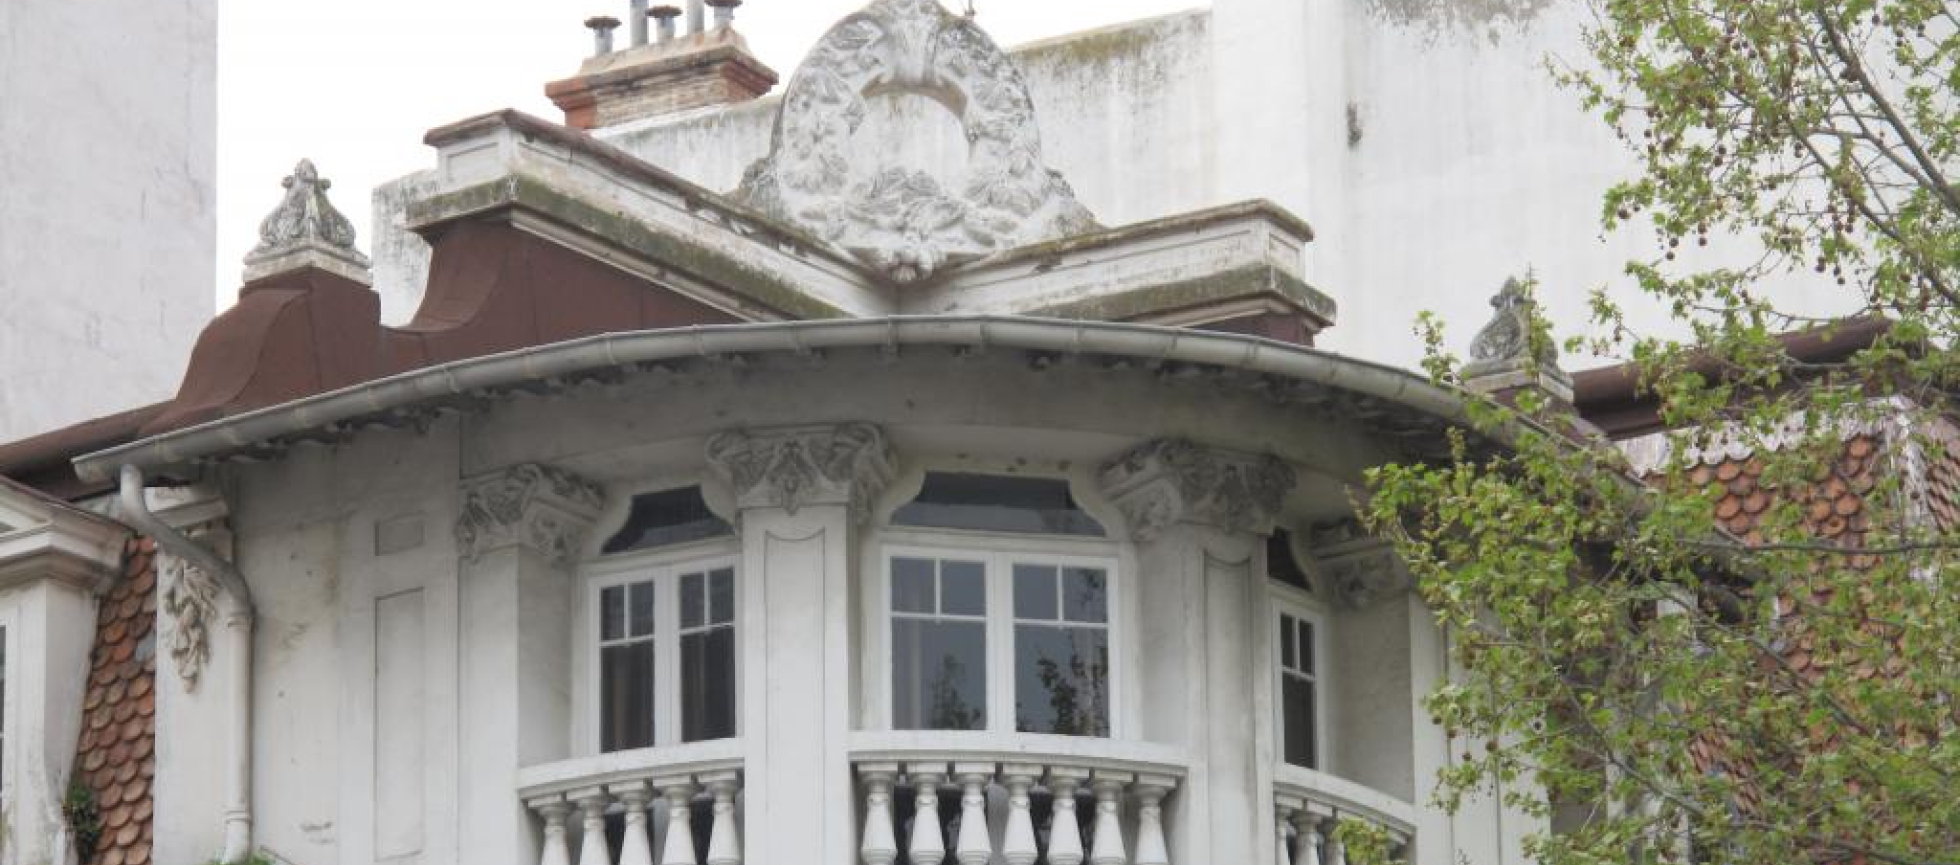  Angle du dernier niveau traité en courbe : 3 fenetres , balcons a balustres, sur le toit une couronne de branches de pin 